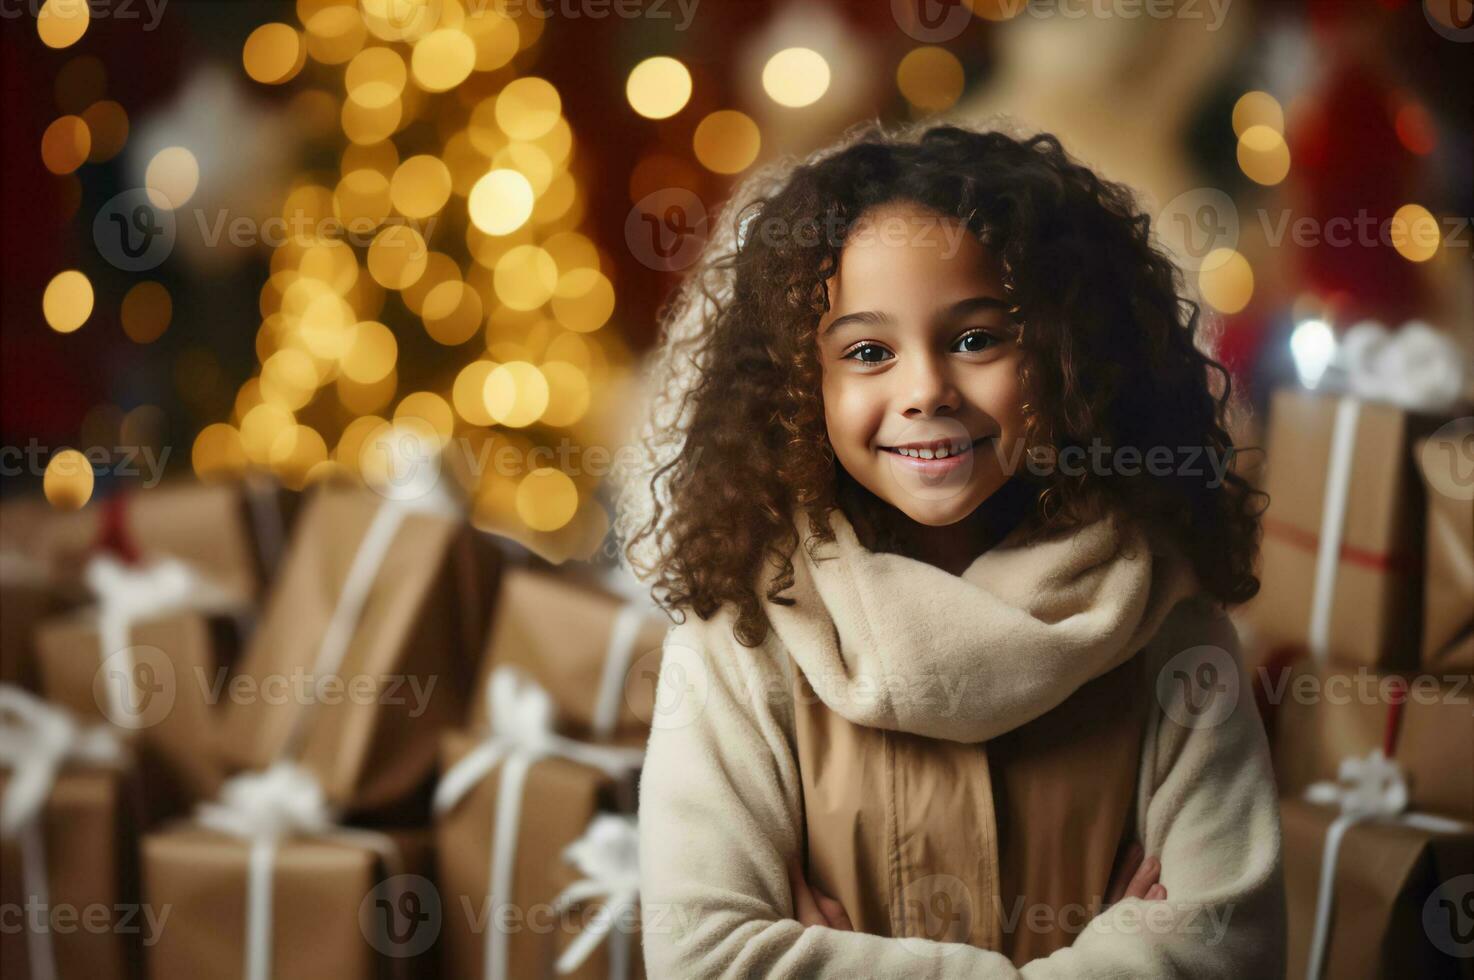 pequeño linda pequeño niña cerca regalo caja y Navidad luces detrás. contento bebé mirando adelante a Navidad foto